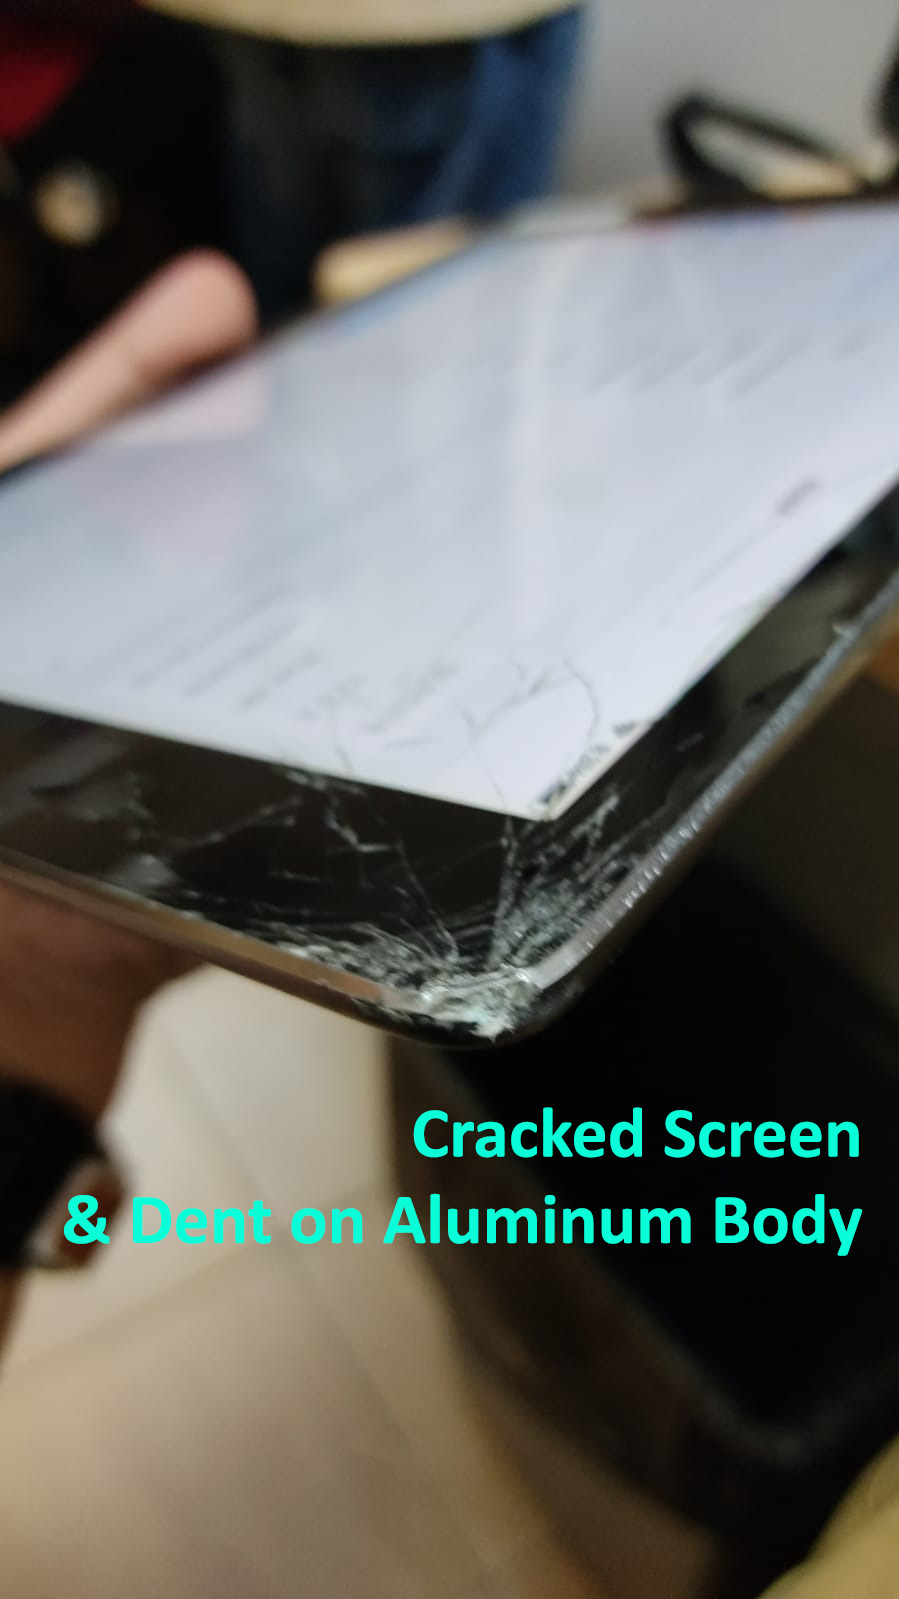 iPad Air 1 A1474 Cracked Screen 1